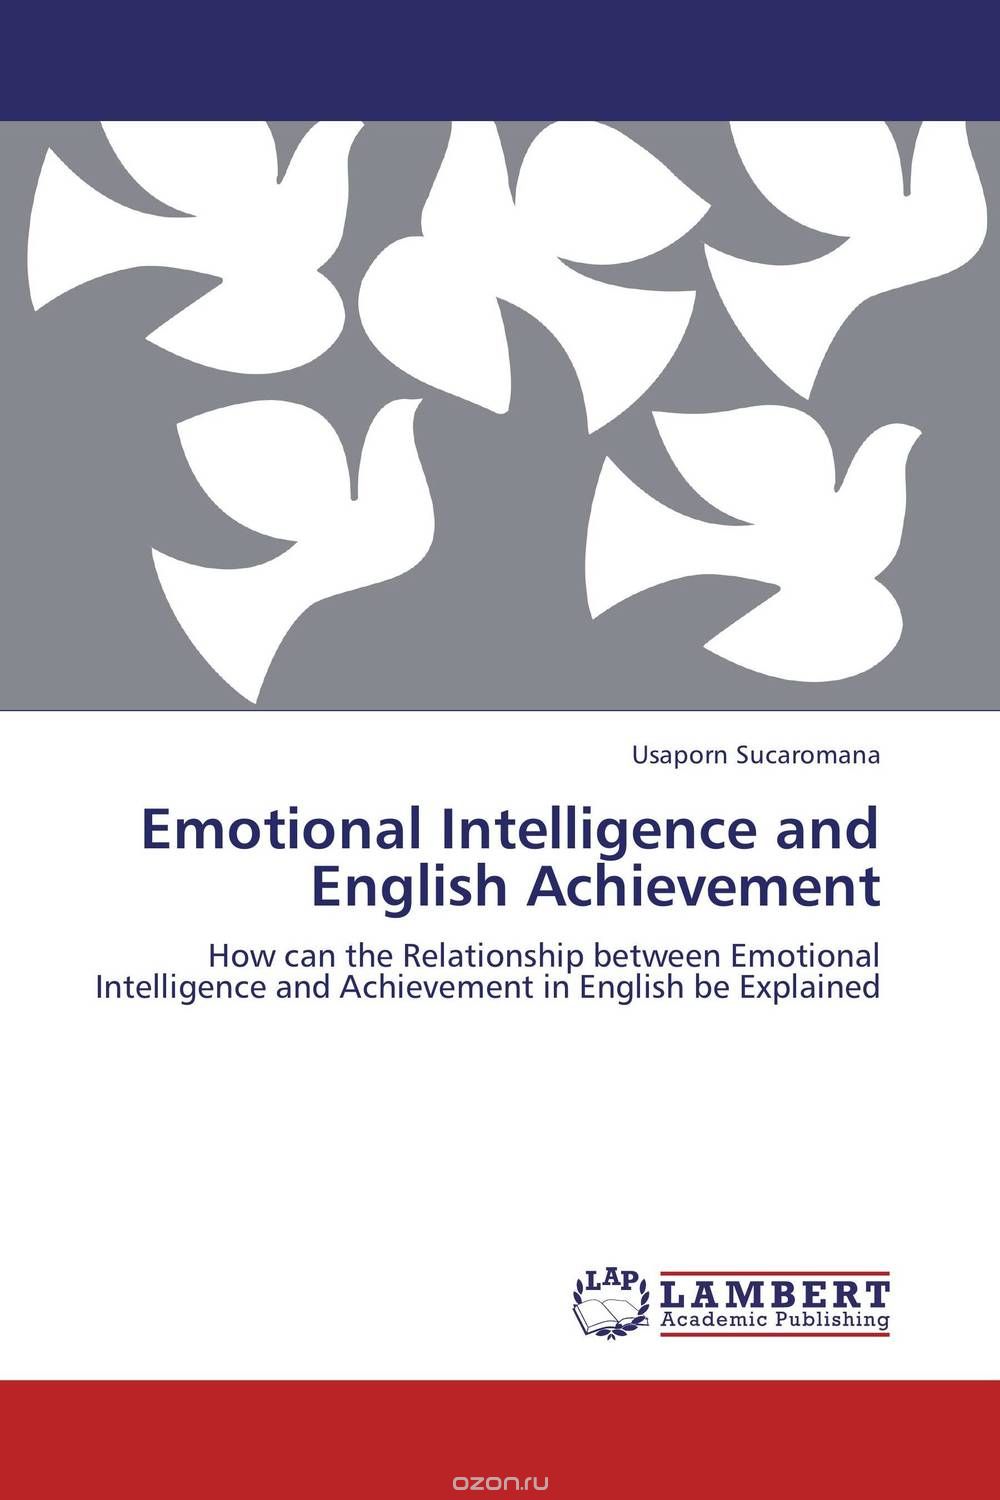 Скачать книгу "Emotional Intelligence and English Achievement"